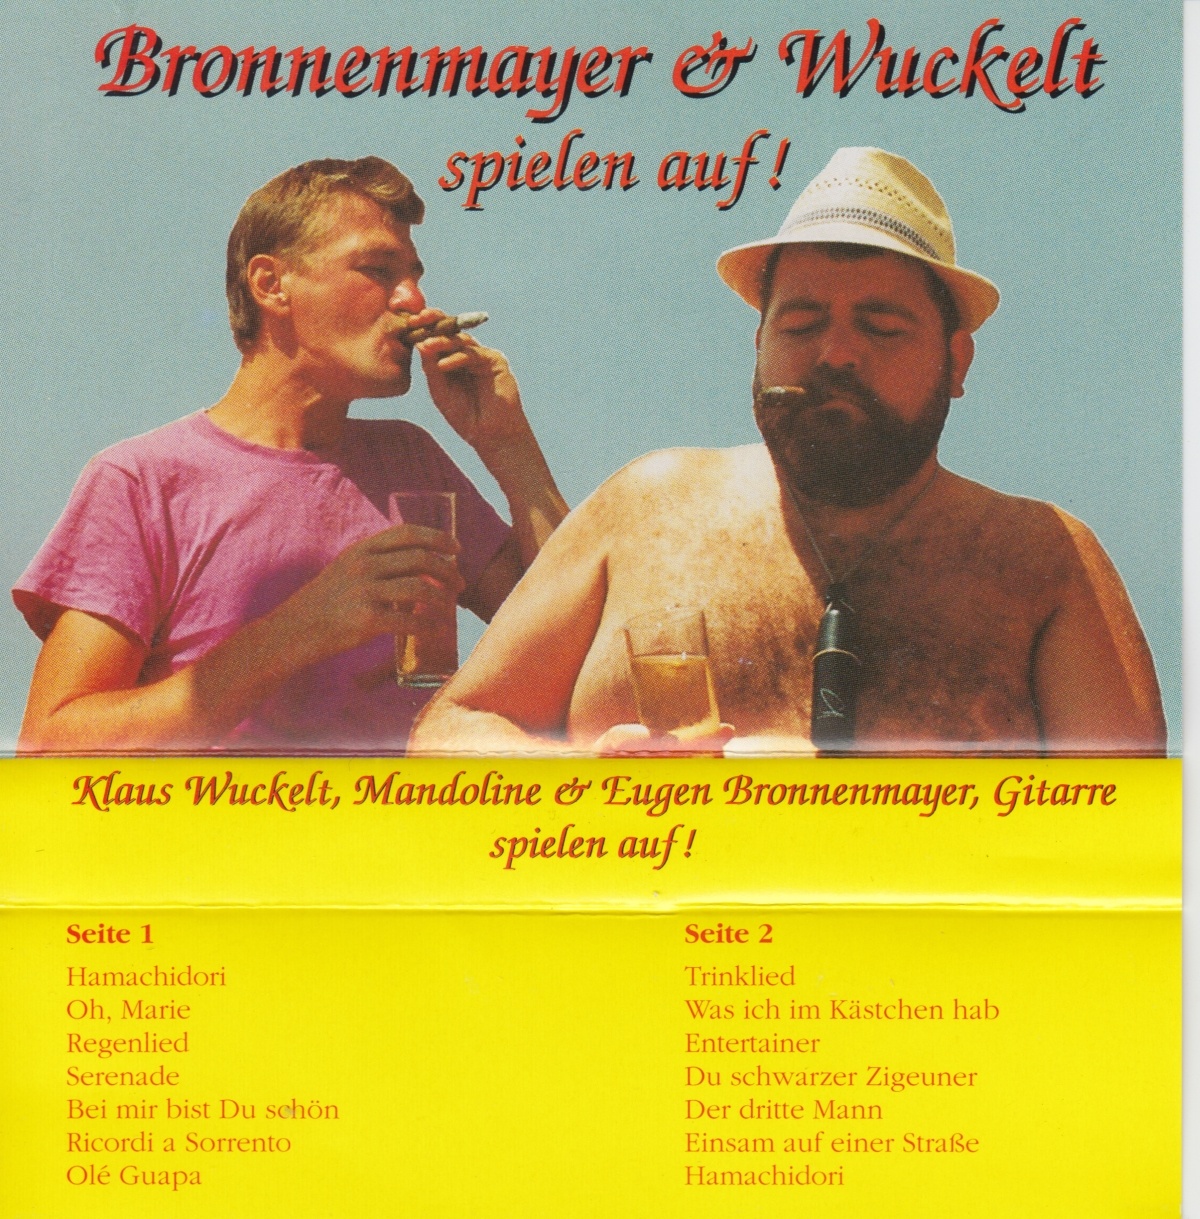 You are currently viewing Bronnenmayer und Wuckelt spielen auf!